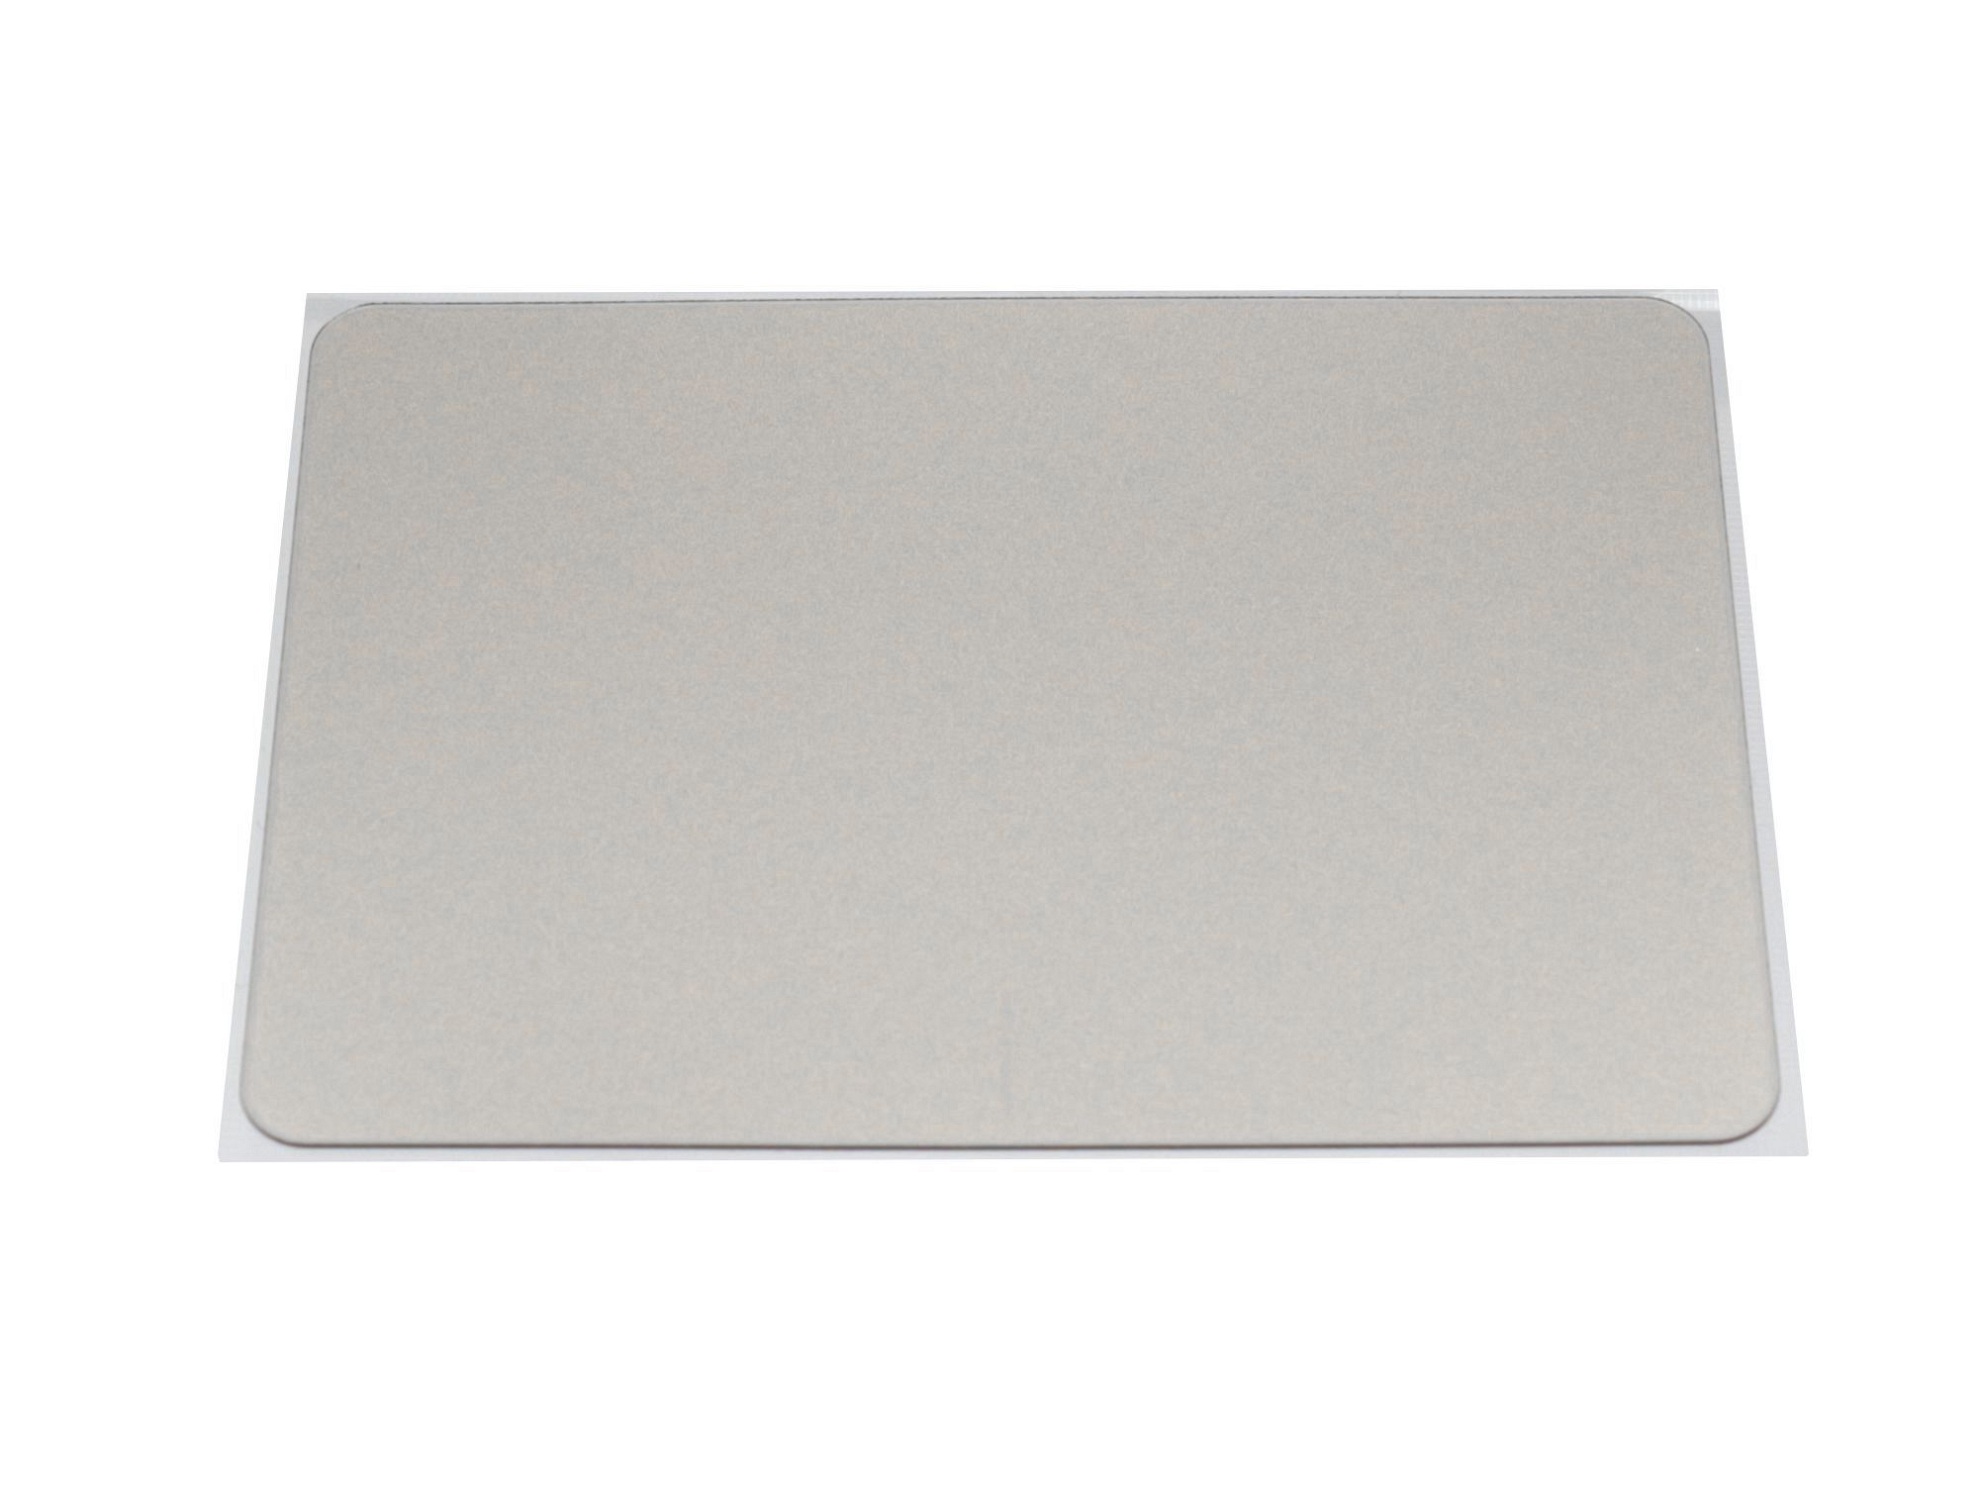 Touchpad Abdeckung silber für Asus F556UA